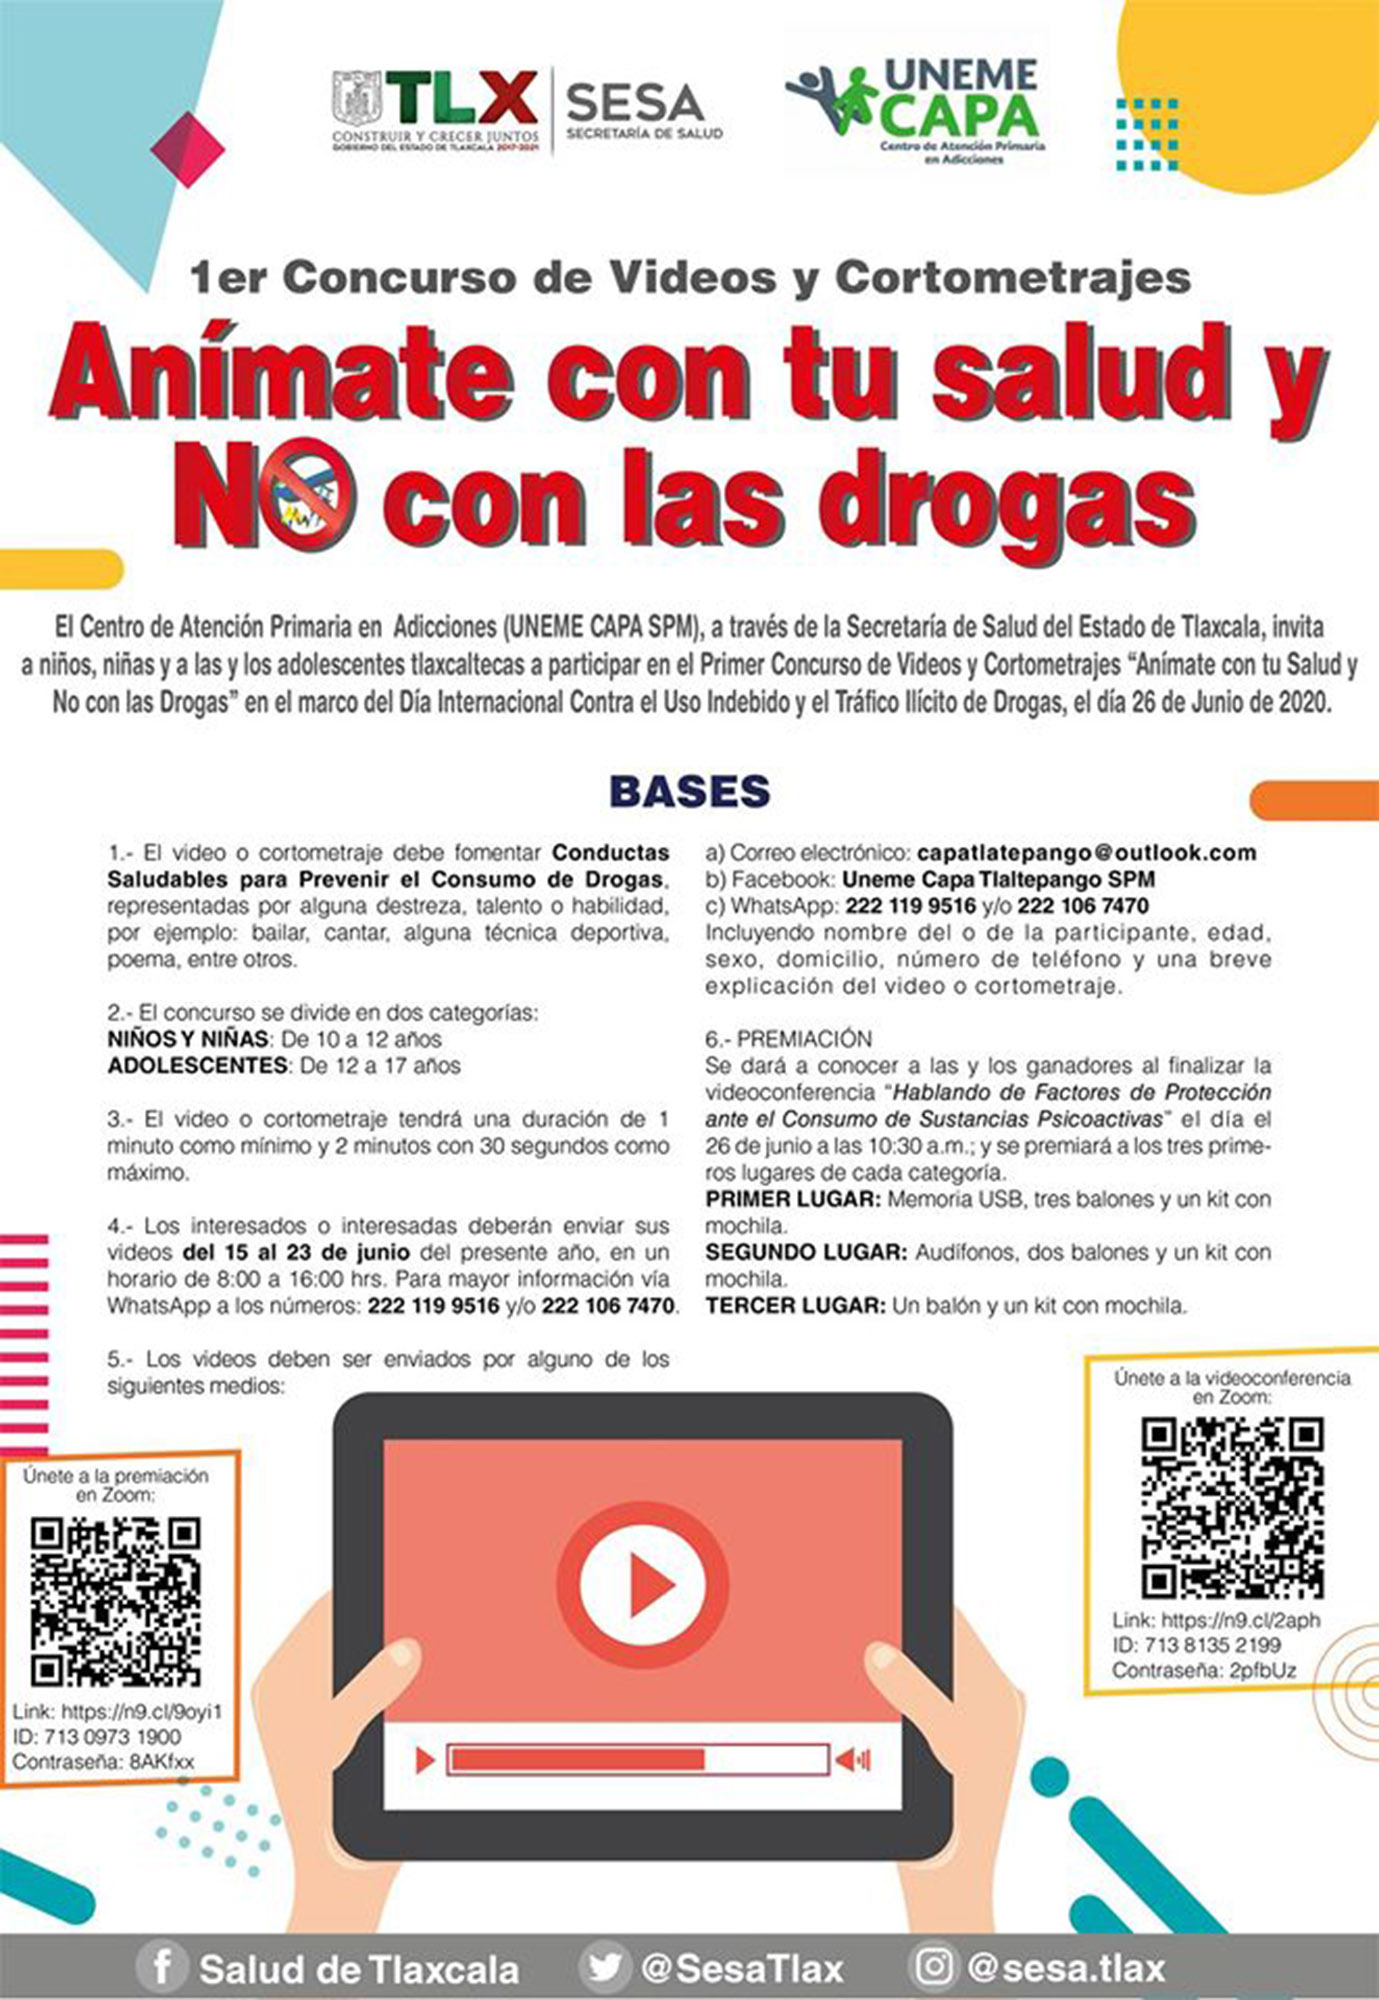 Realizará SESA primer concurso de videos para prevenir consumo de drogas.